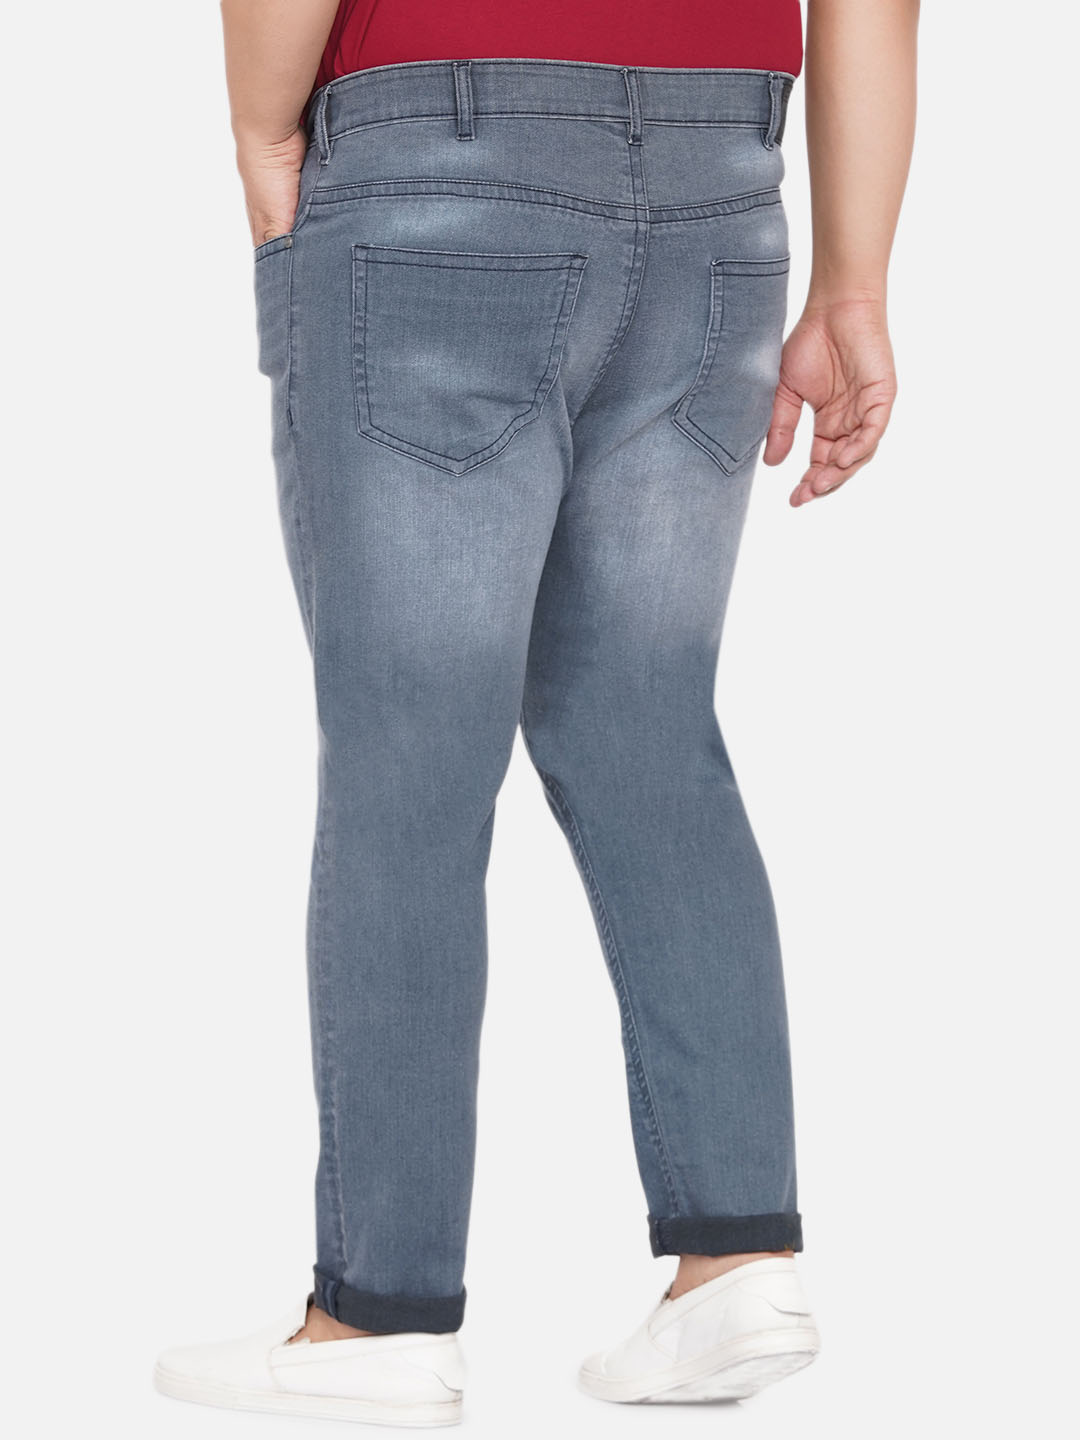 bottomwear/jeans/JPJ12254/jpj12254-5.jpg